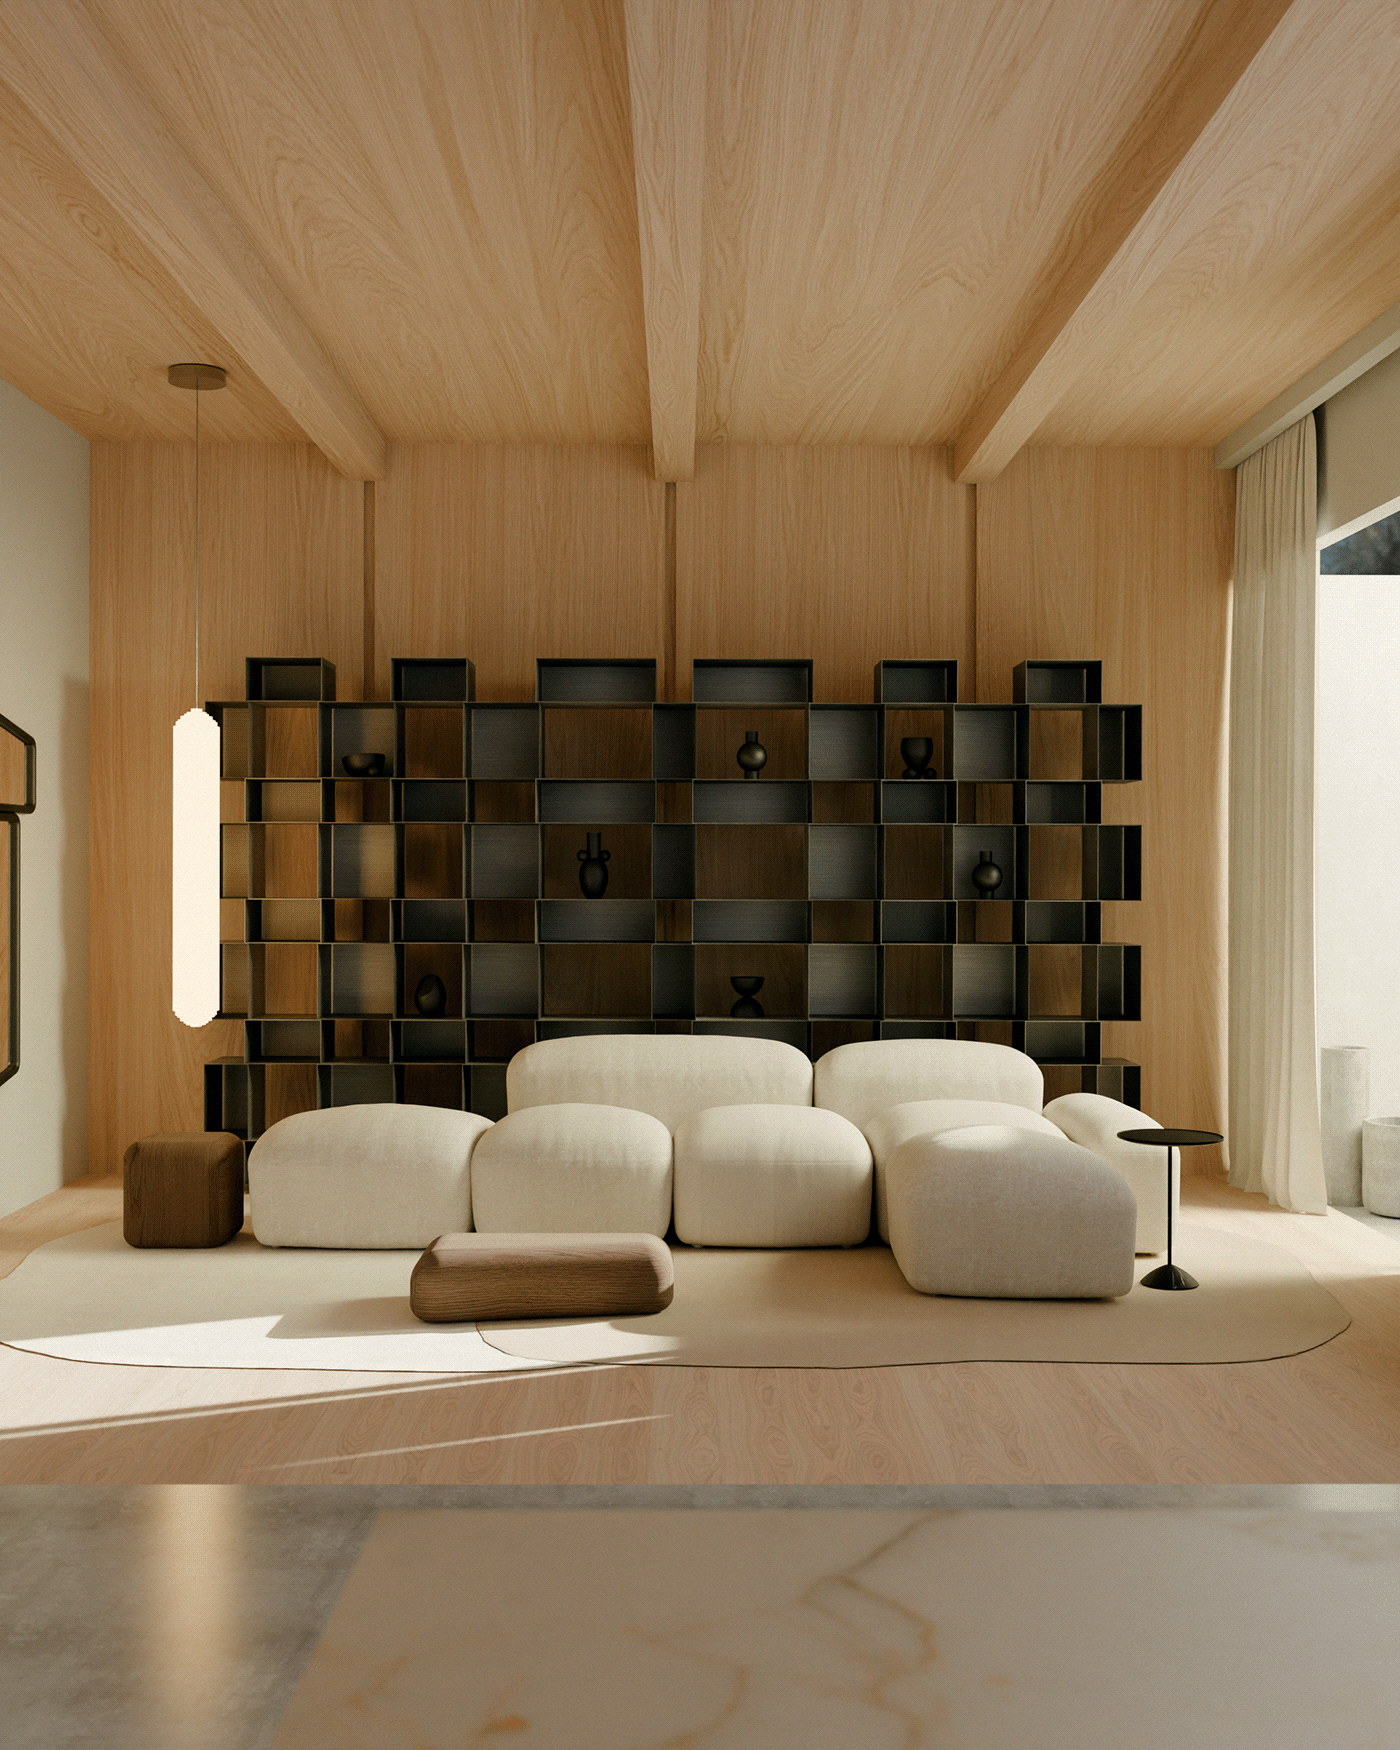 furniture 3d modeling 3D Visualization rendering graphics design